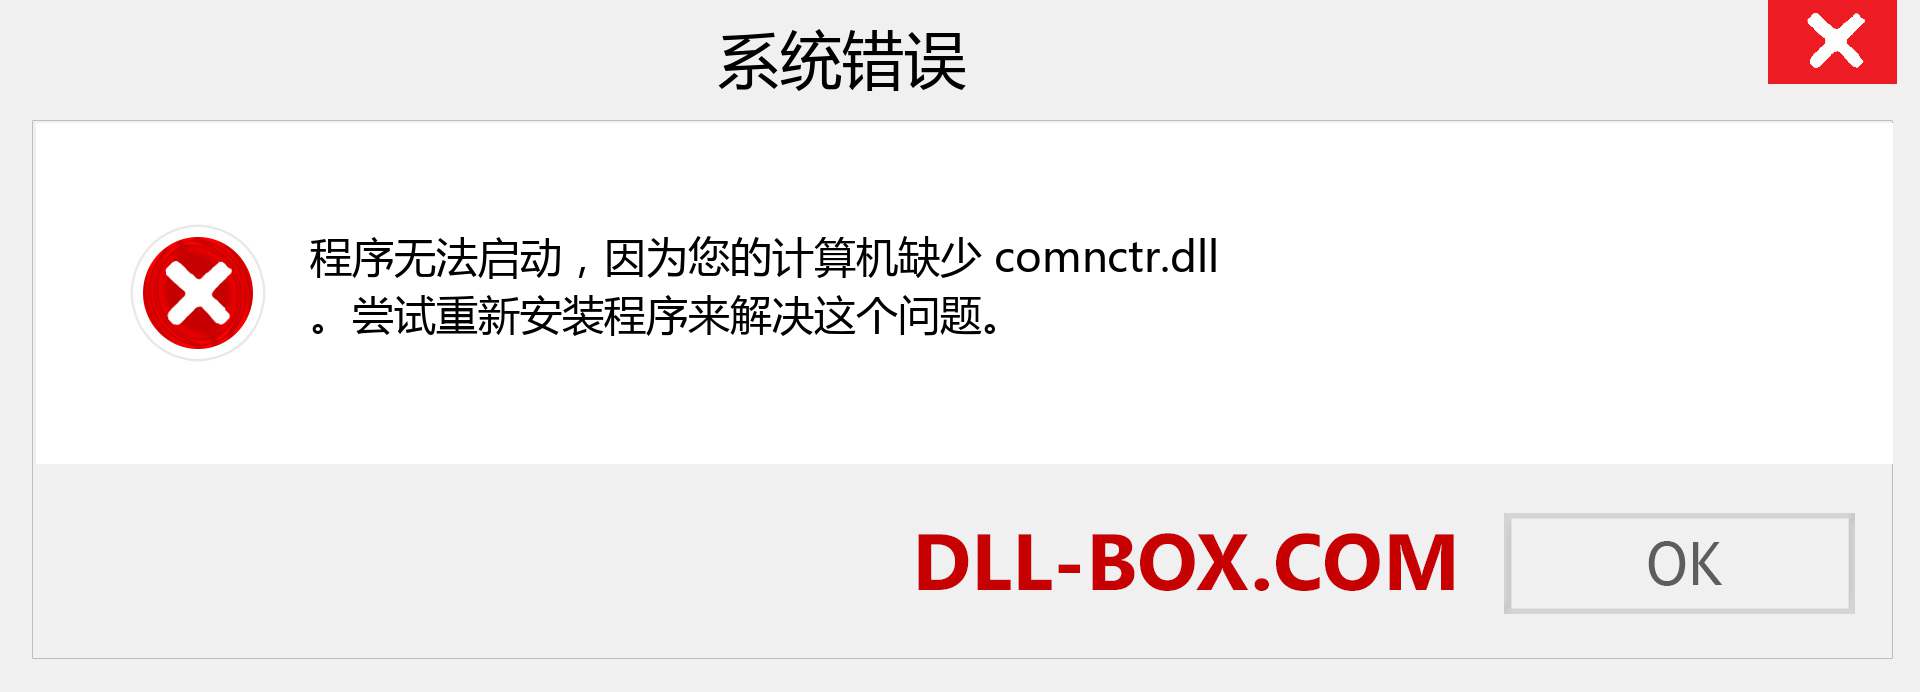 comnctr.dll 文件丢失？。 适用于 Windows 7、8、10 的下载 - 修复 Windows、照片、图像上的 comnctr dll 丢失错误